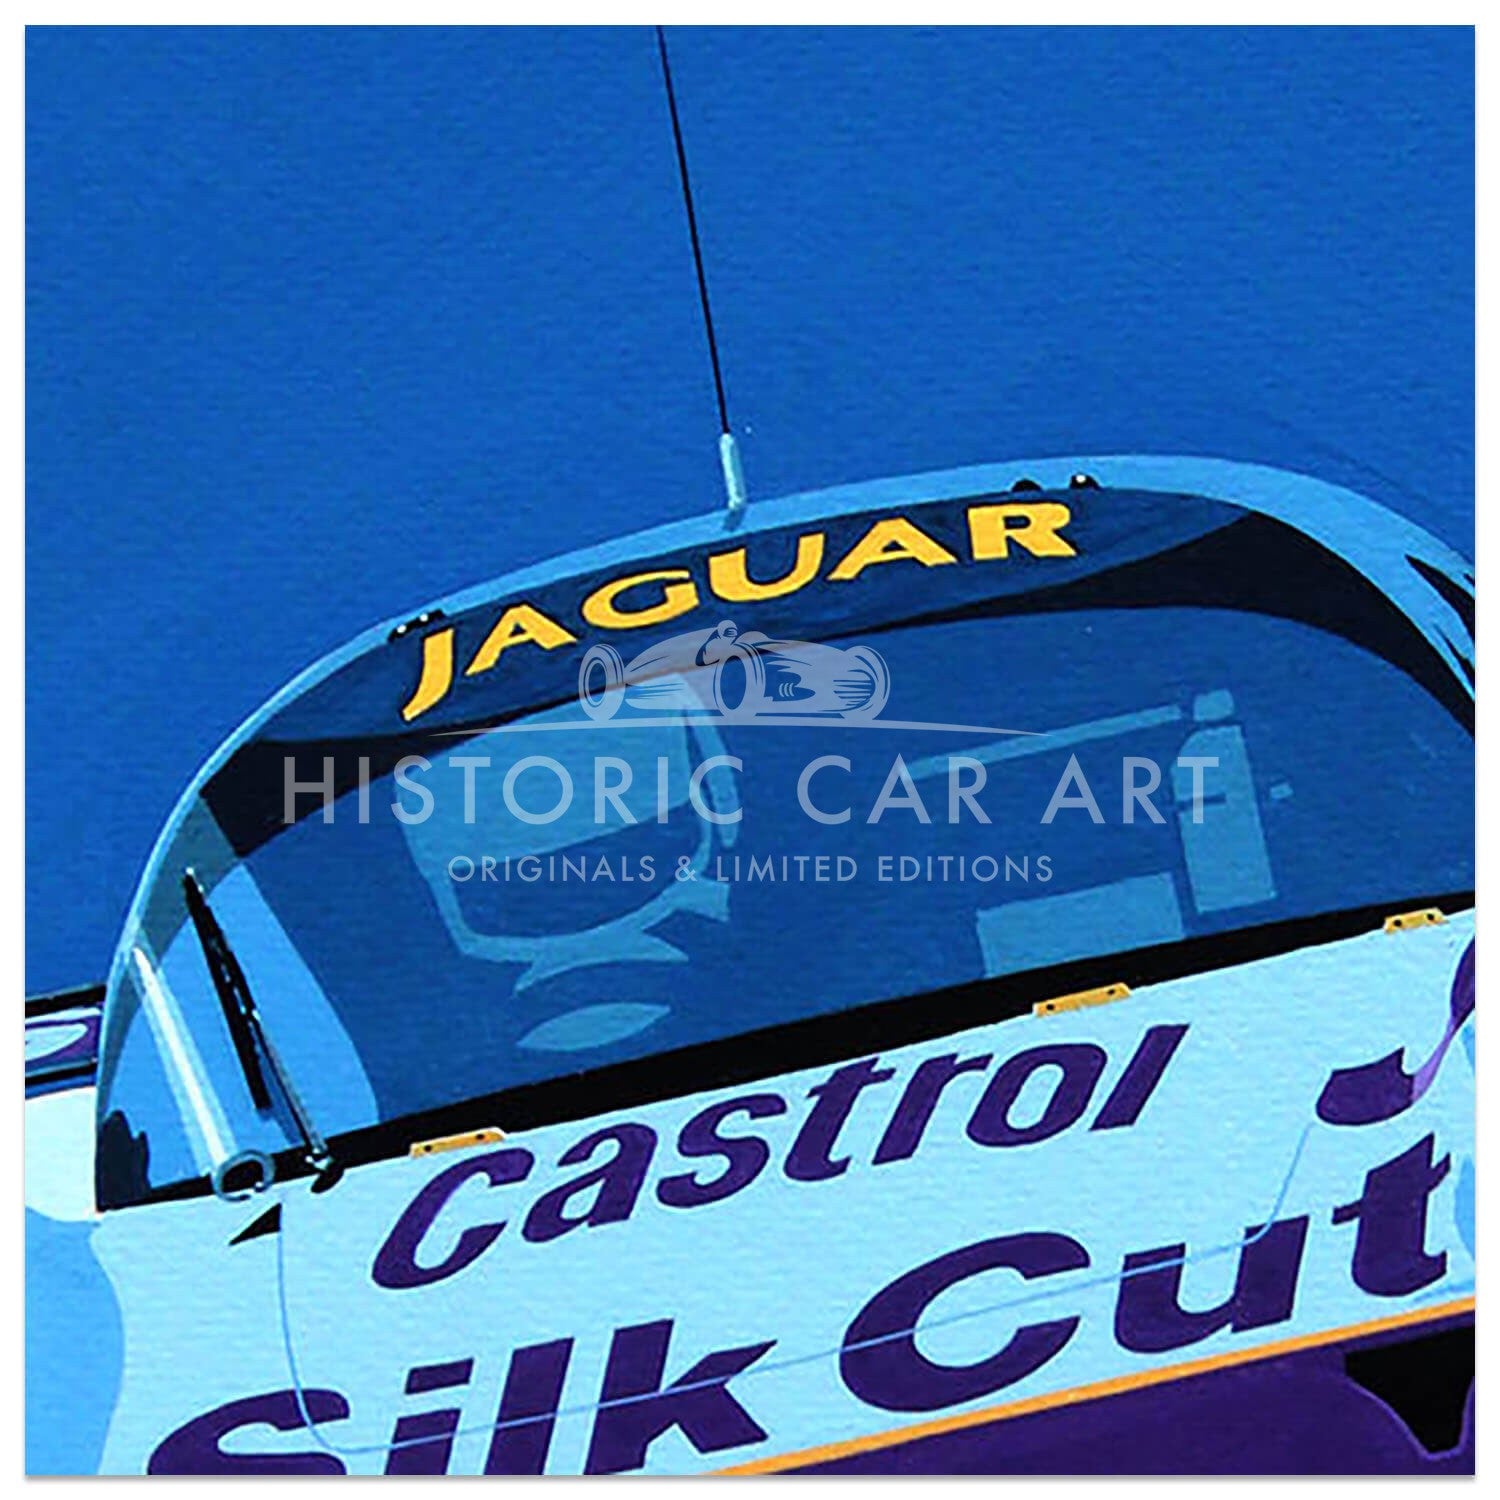 1990 Silk Cut Jaguar XJR12 | Print